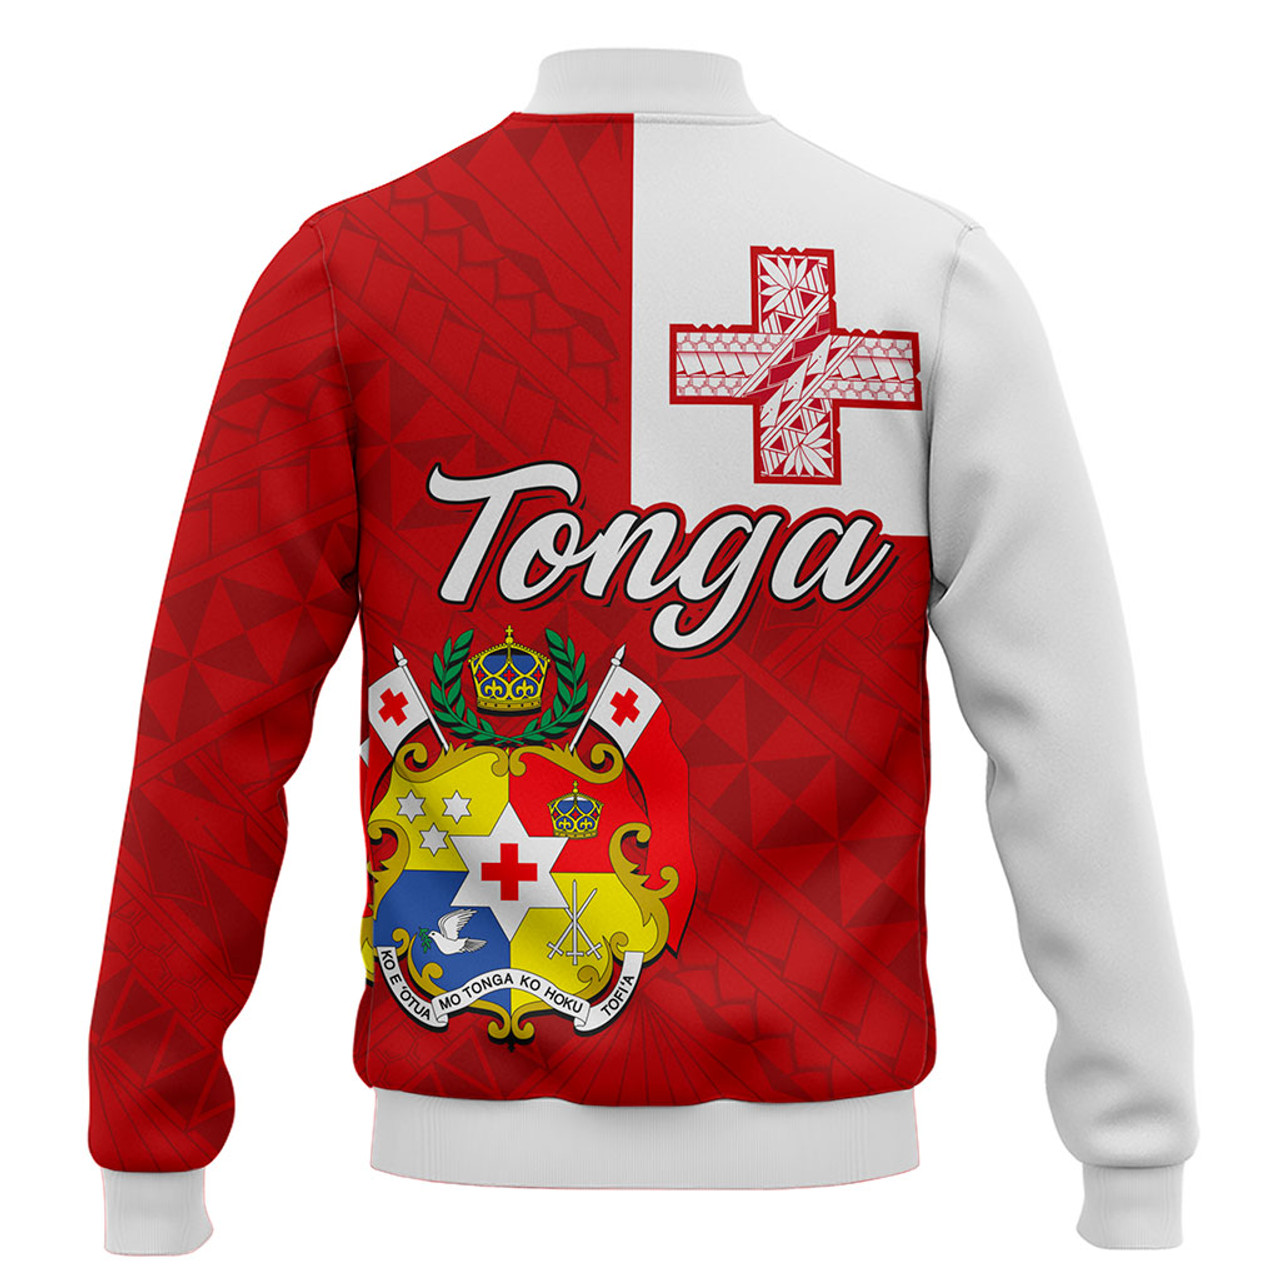 Tonga Baseball Jacket Flag Design With Pattern